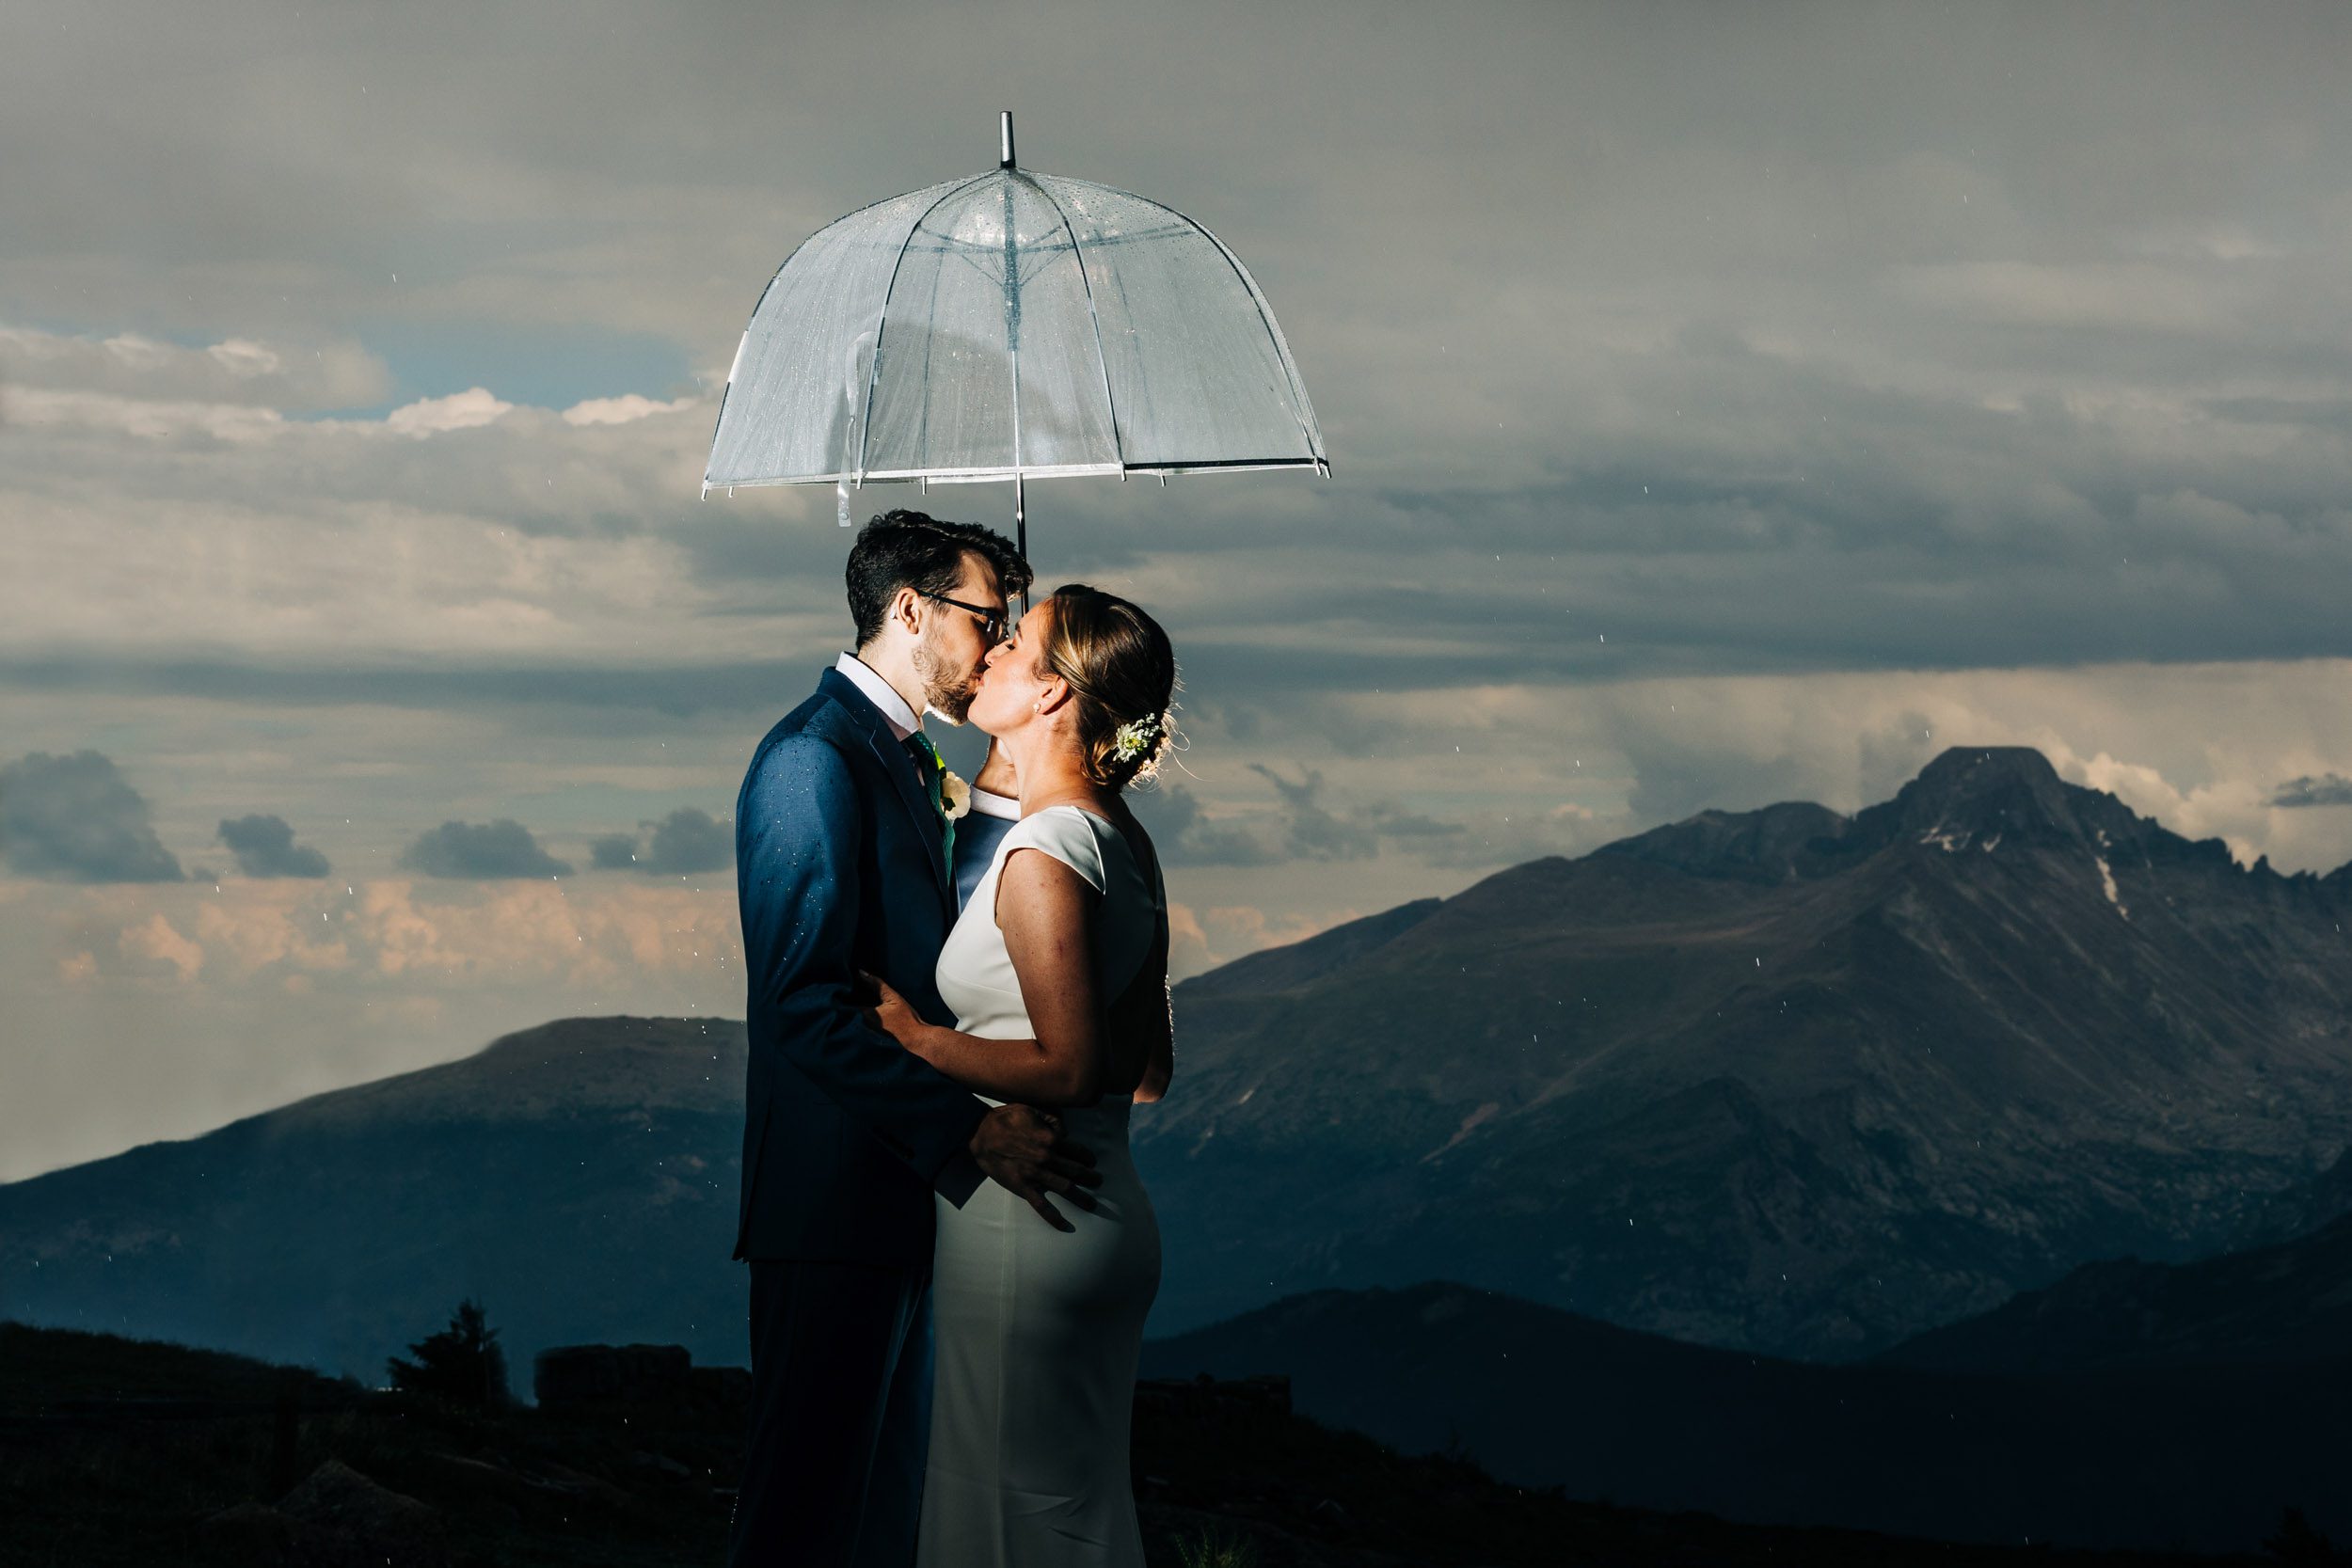 RMNP rainy wedding photo